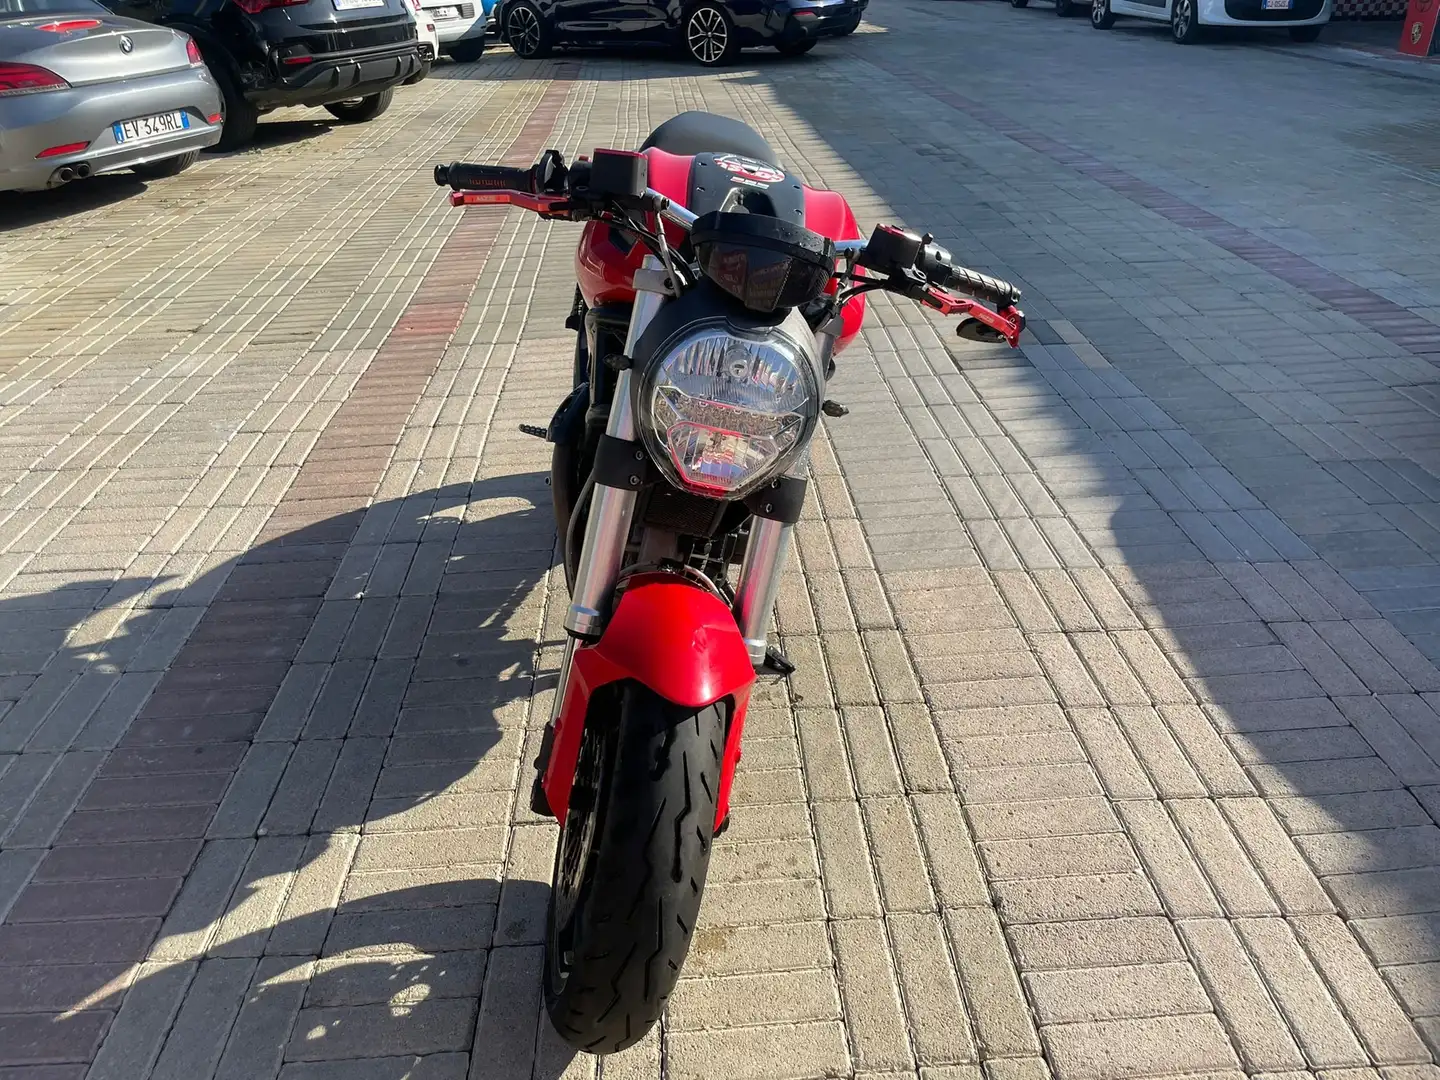 Ducati Monster 696 Piros - 2